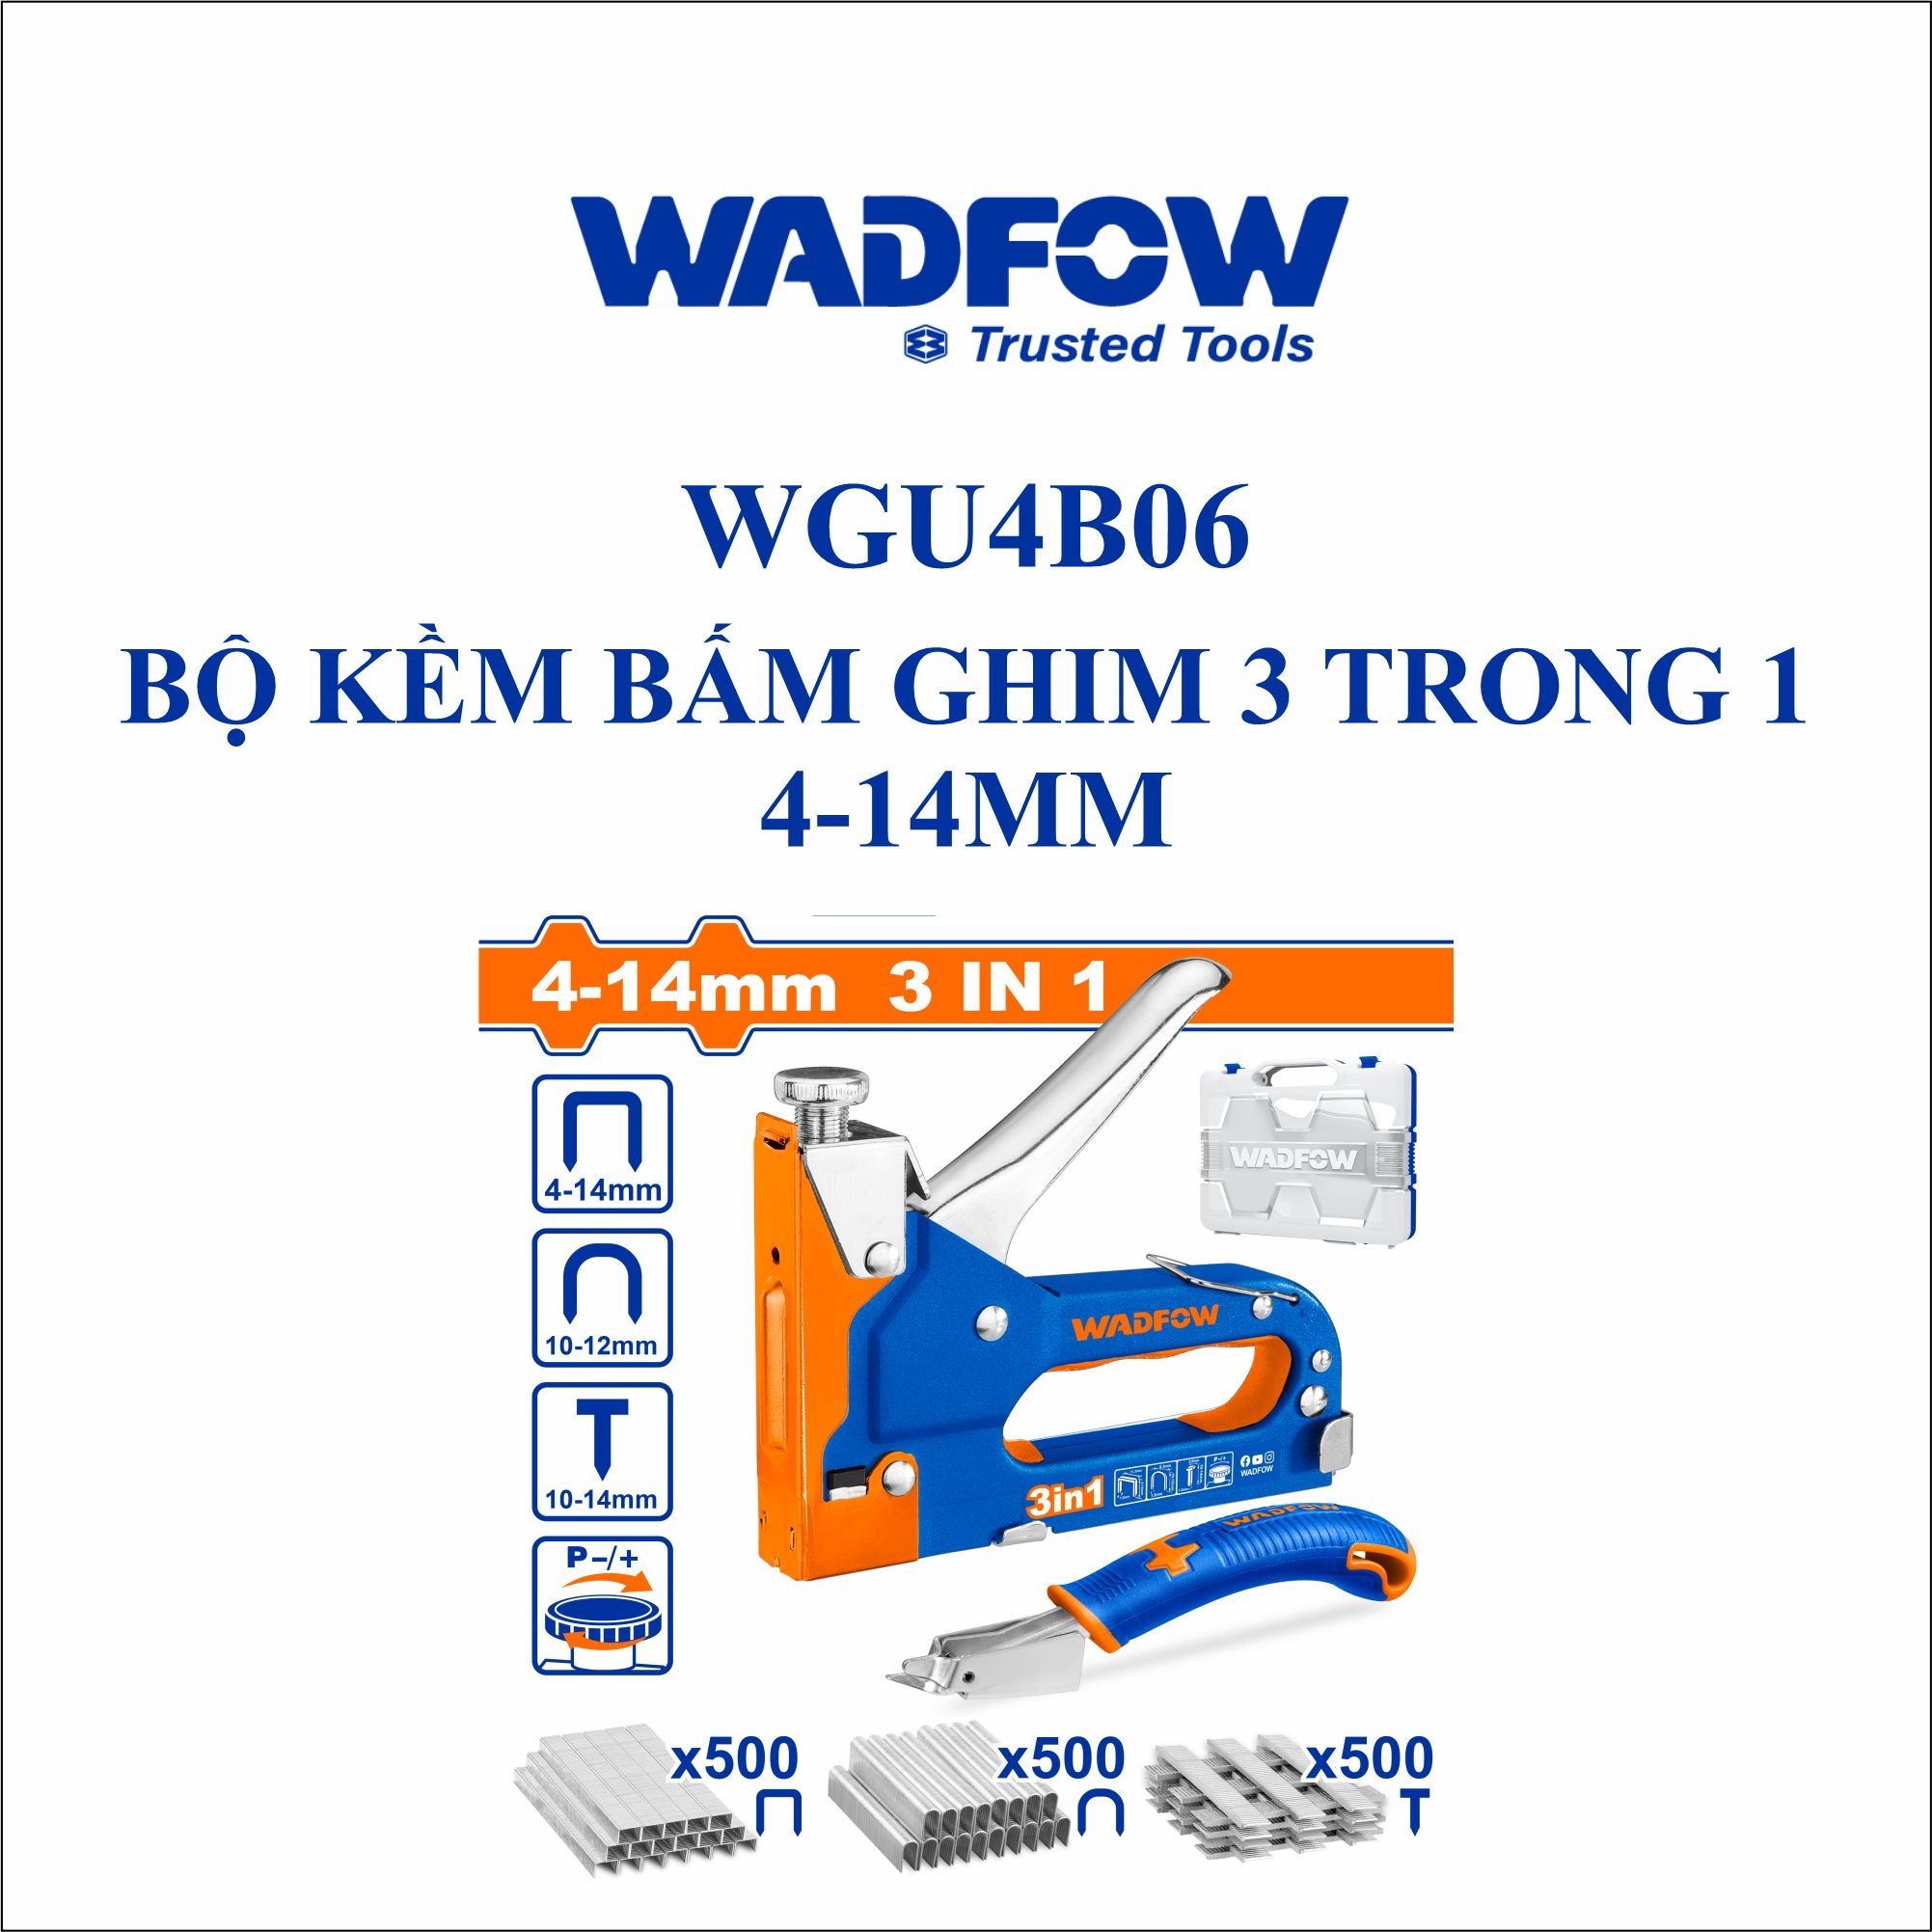  Bộ Kìm bấm ghim 3 trong 1 4-14mm WADFOW WGU4B06 